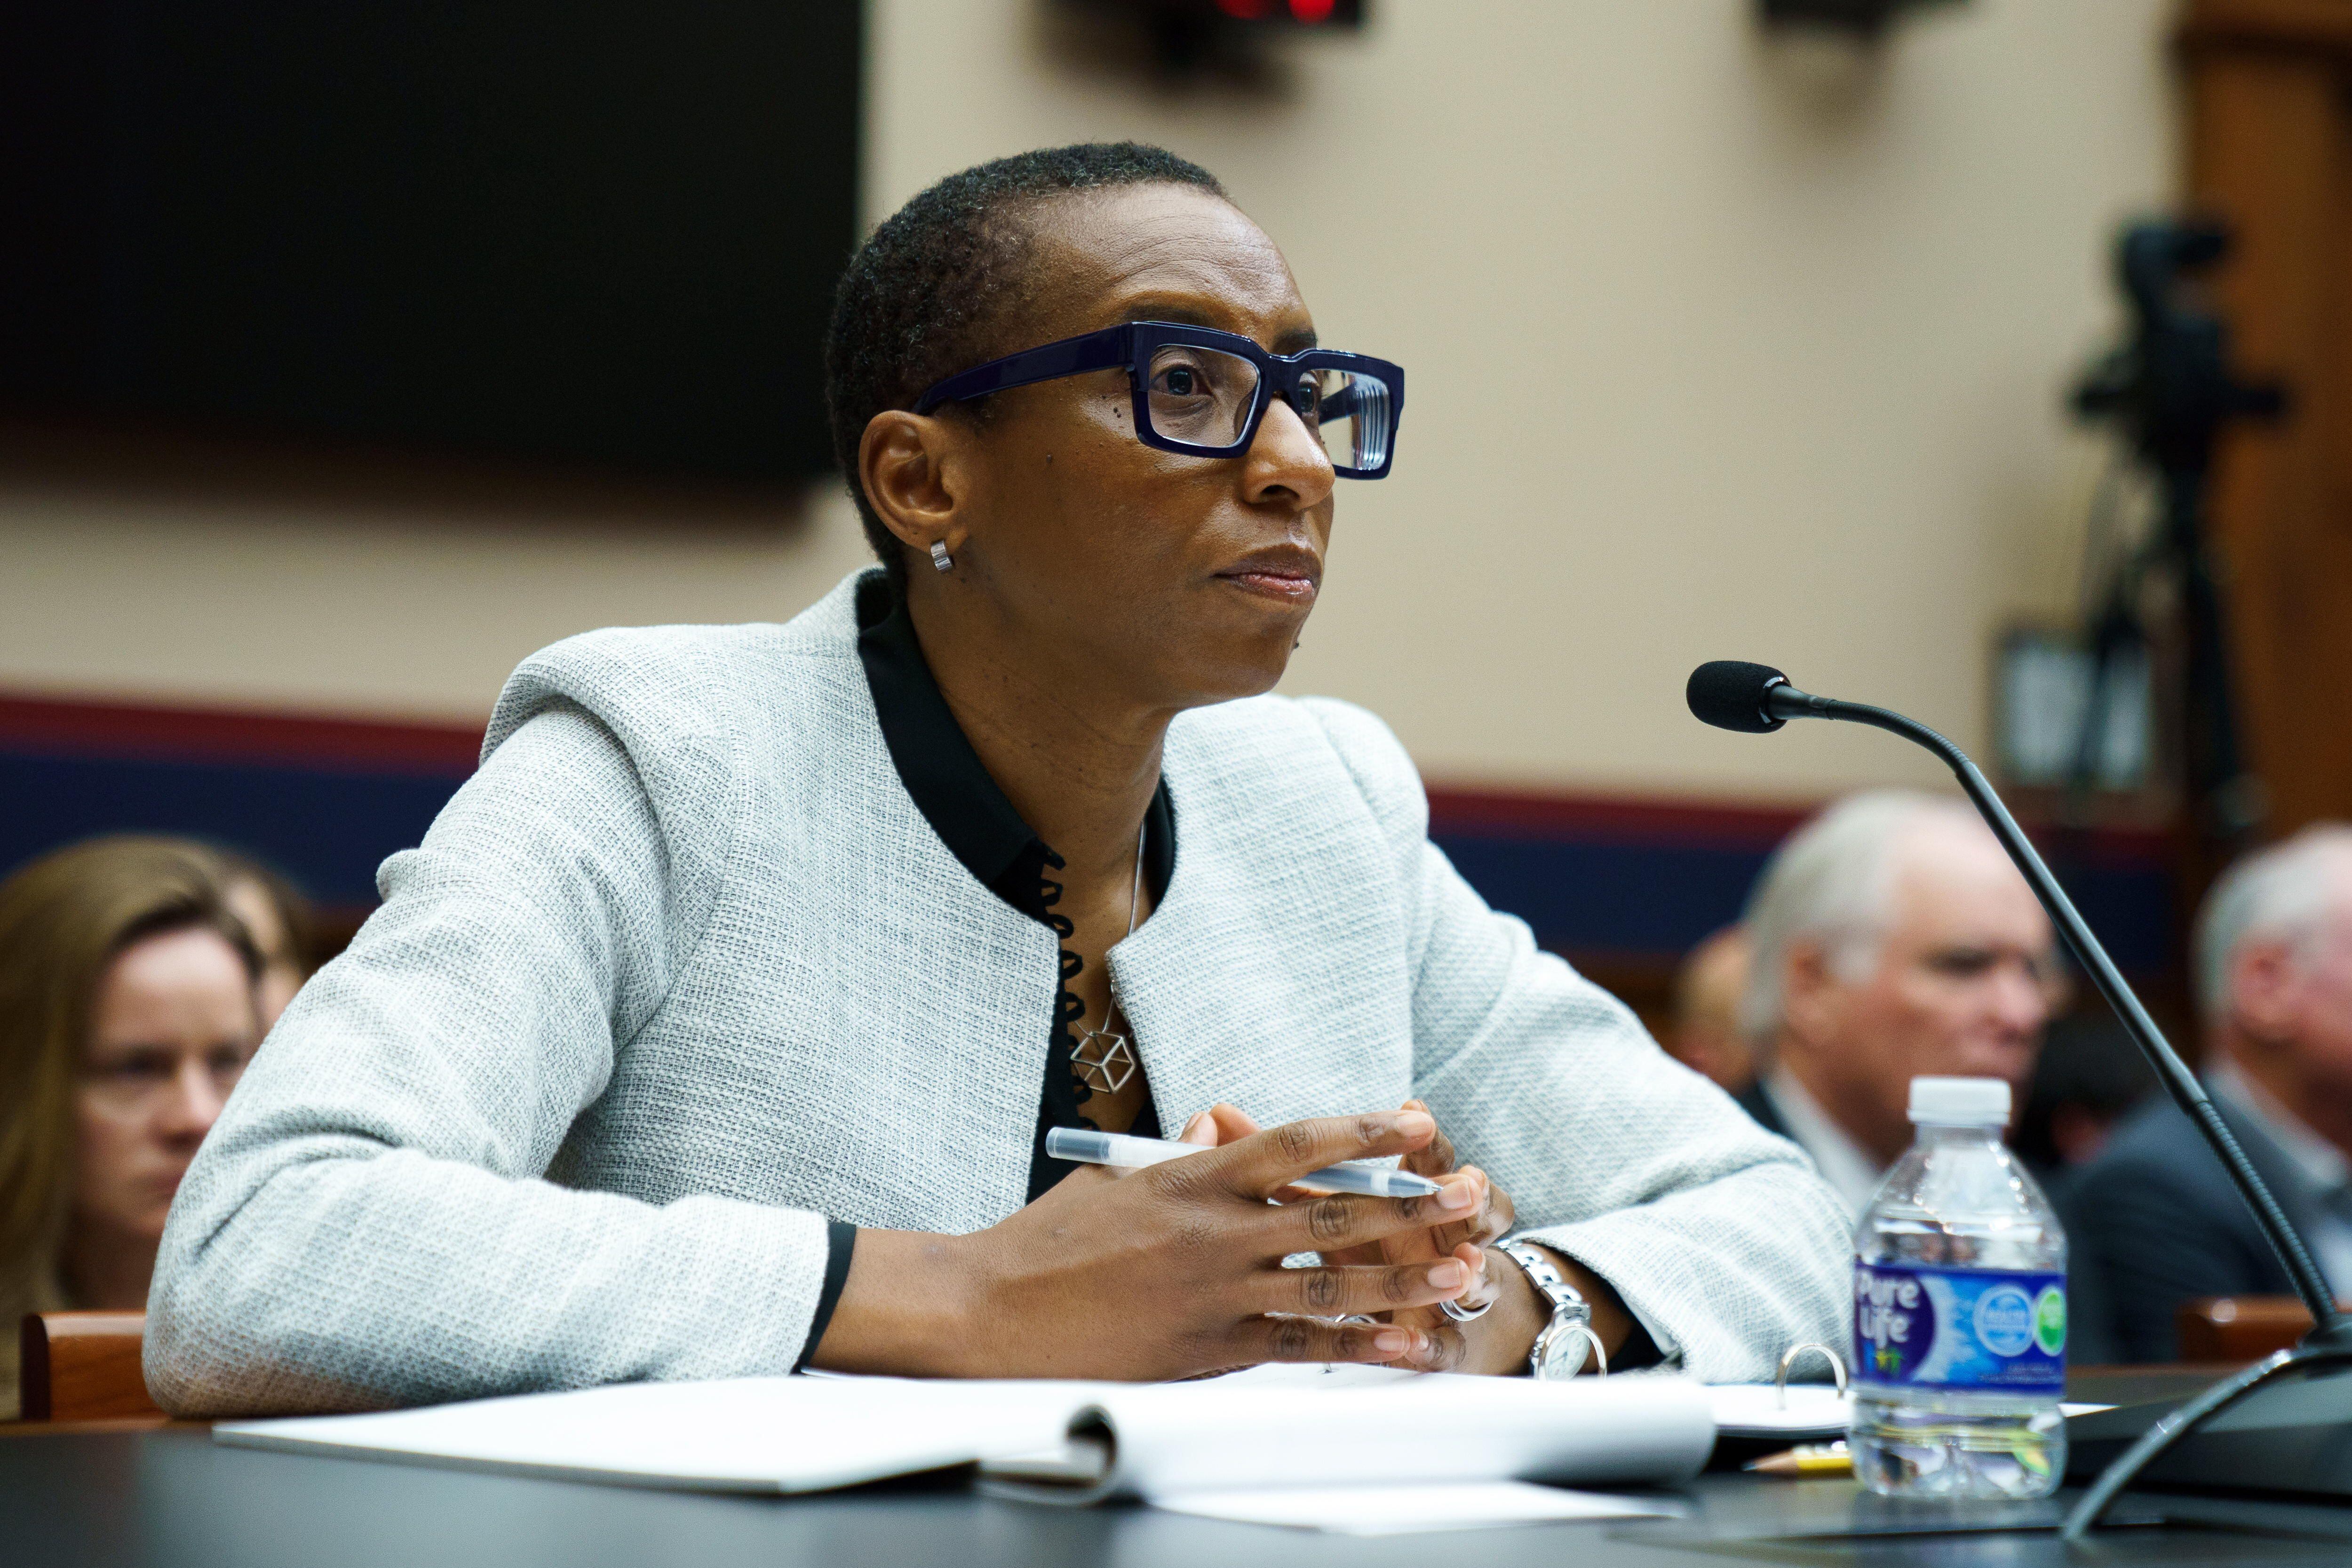 La dimisión de la presidenta de Harvard, Claudine Gay, se produjo tras acusaciones de plagio y críticas por la pérdida de un importante caso ante la Corte Suprema sobre políticas de admisión basadas en la raza. (EFE/EPA/Will Oliver)